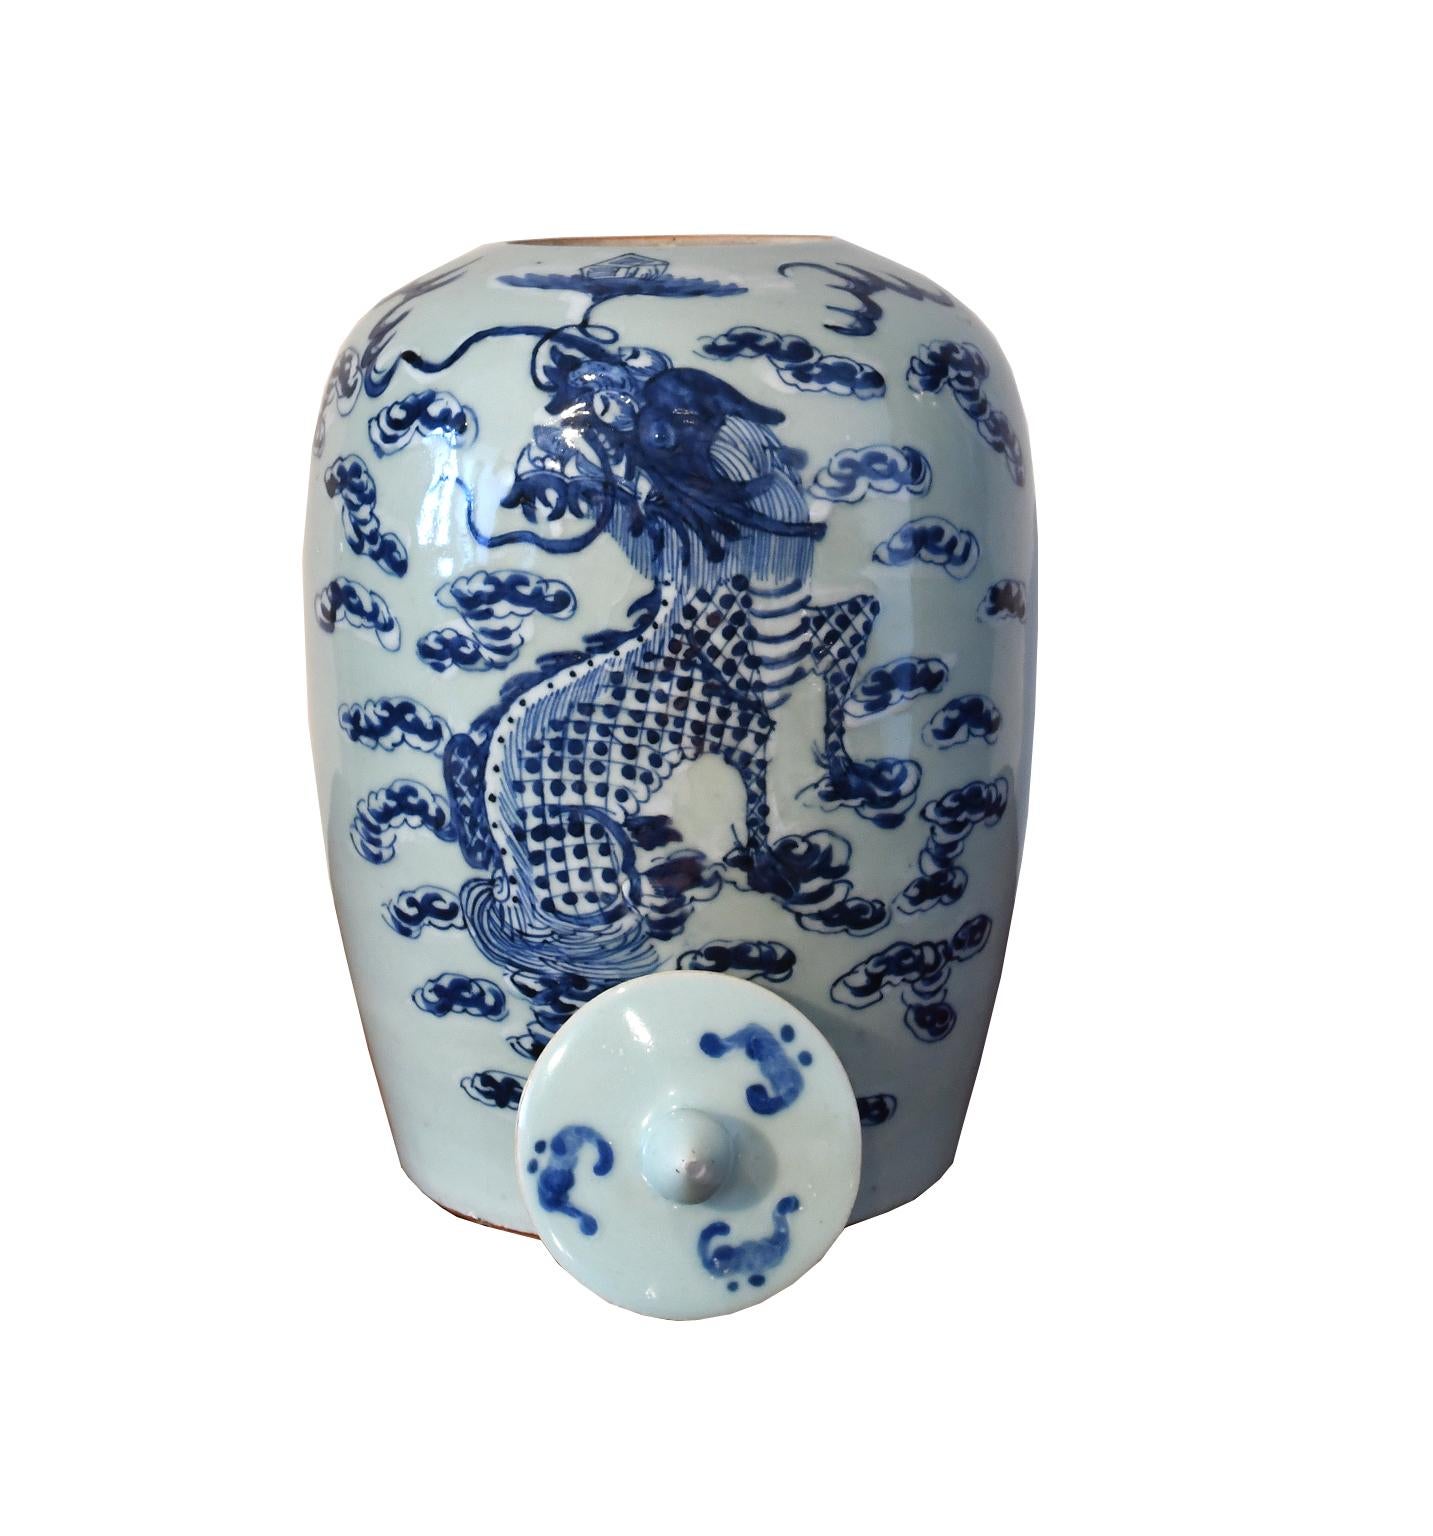 Ein sehr schöner balusterförmiger Krug aus chinesischem Porzellan mit Deckel und Knauf, bemalt in Unterglasurblauem Craquelé mit handgemalten kobaltblauen und weißen Verzierungen, die einen zweihörnigen, fünfklauigen Drachen inmitten von Wolken